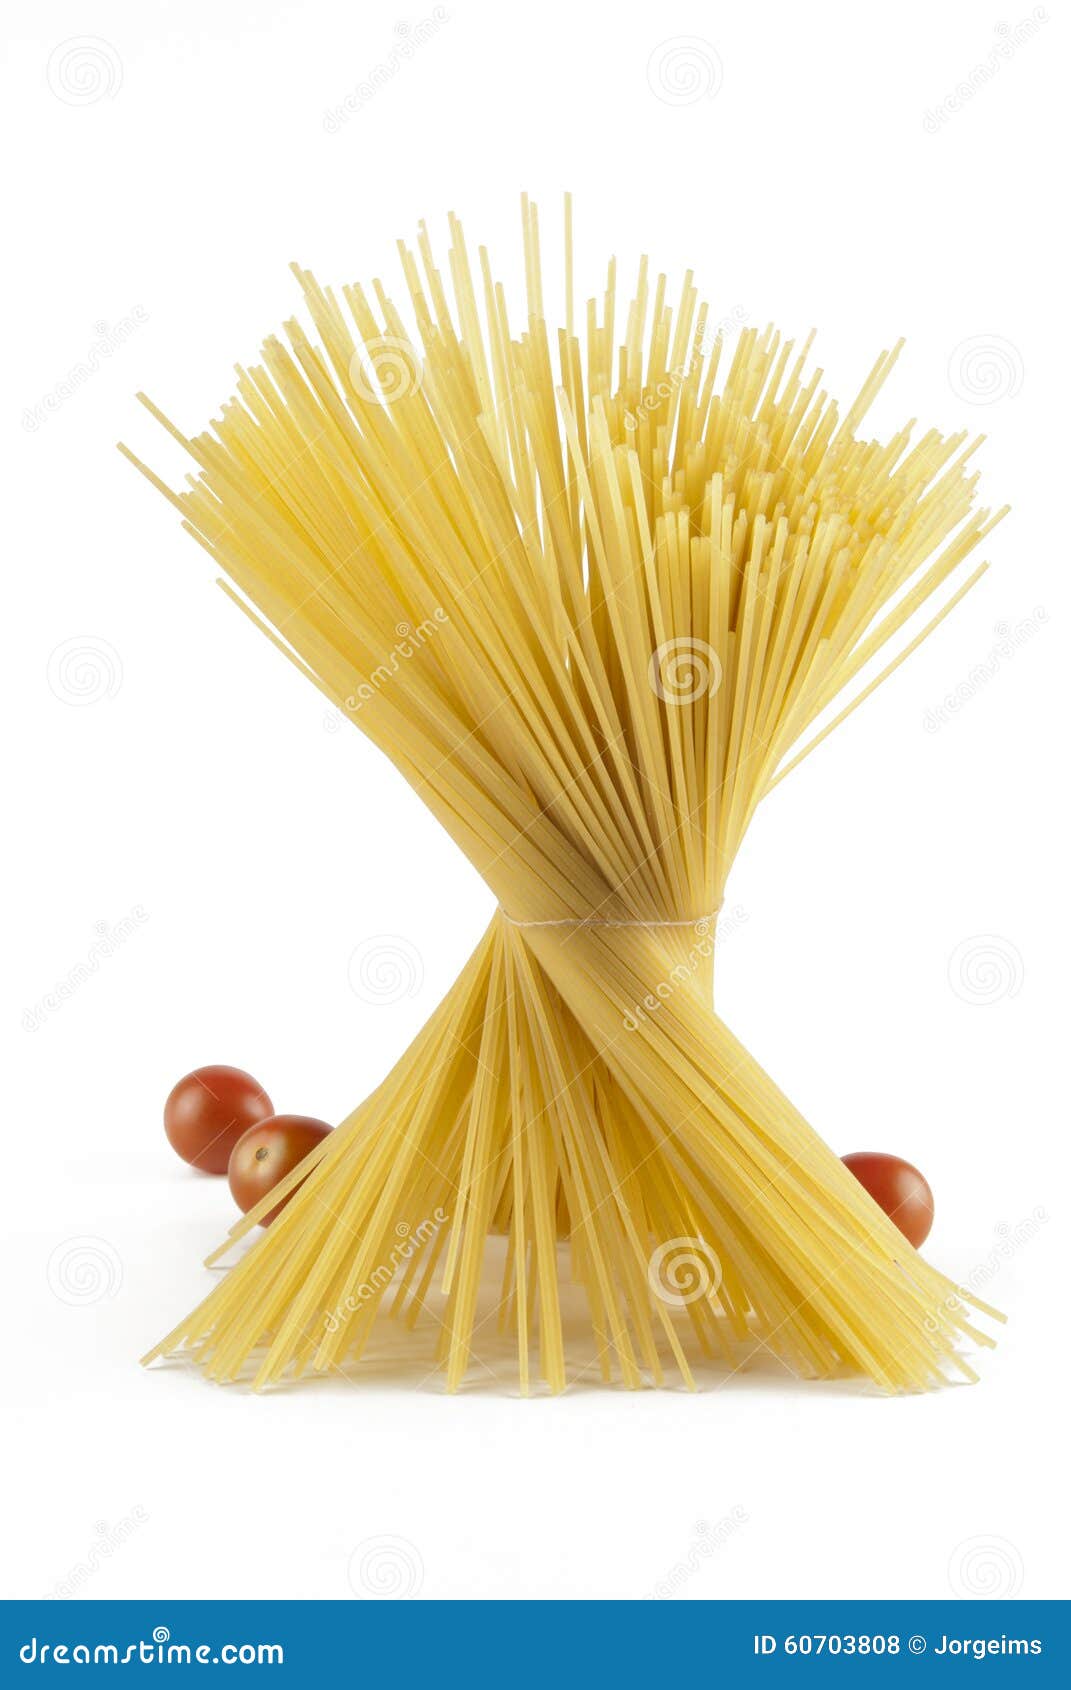 a lot of spaghetti